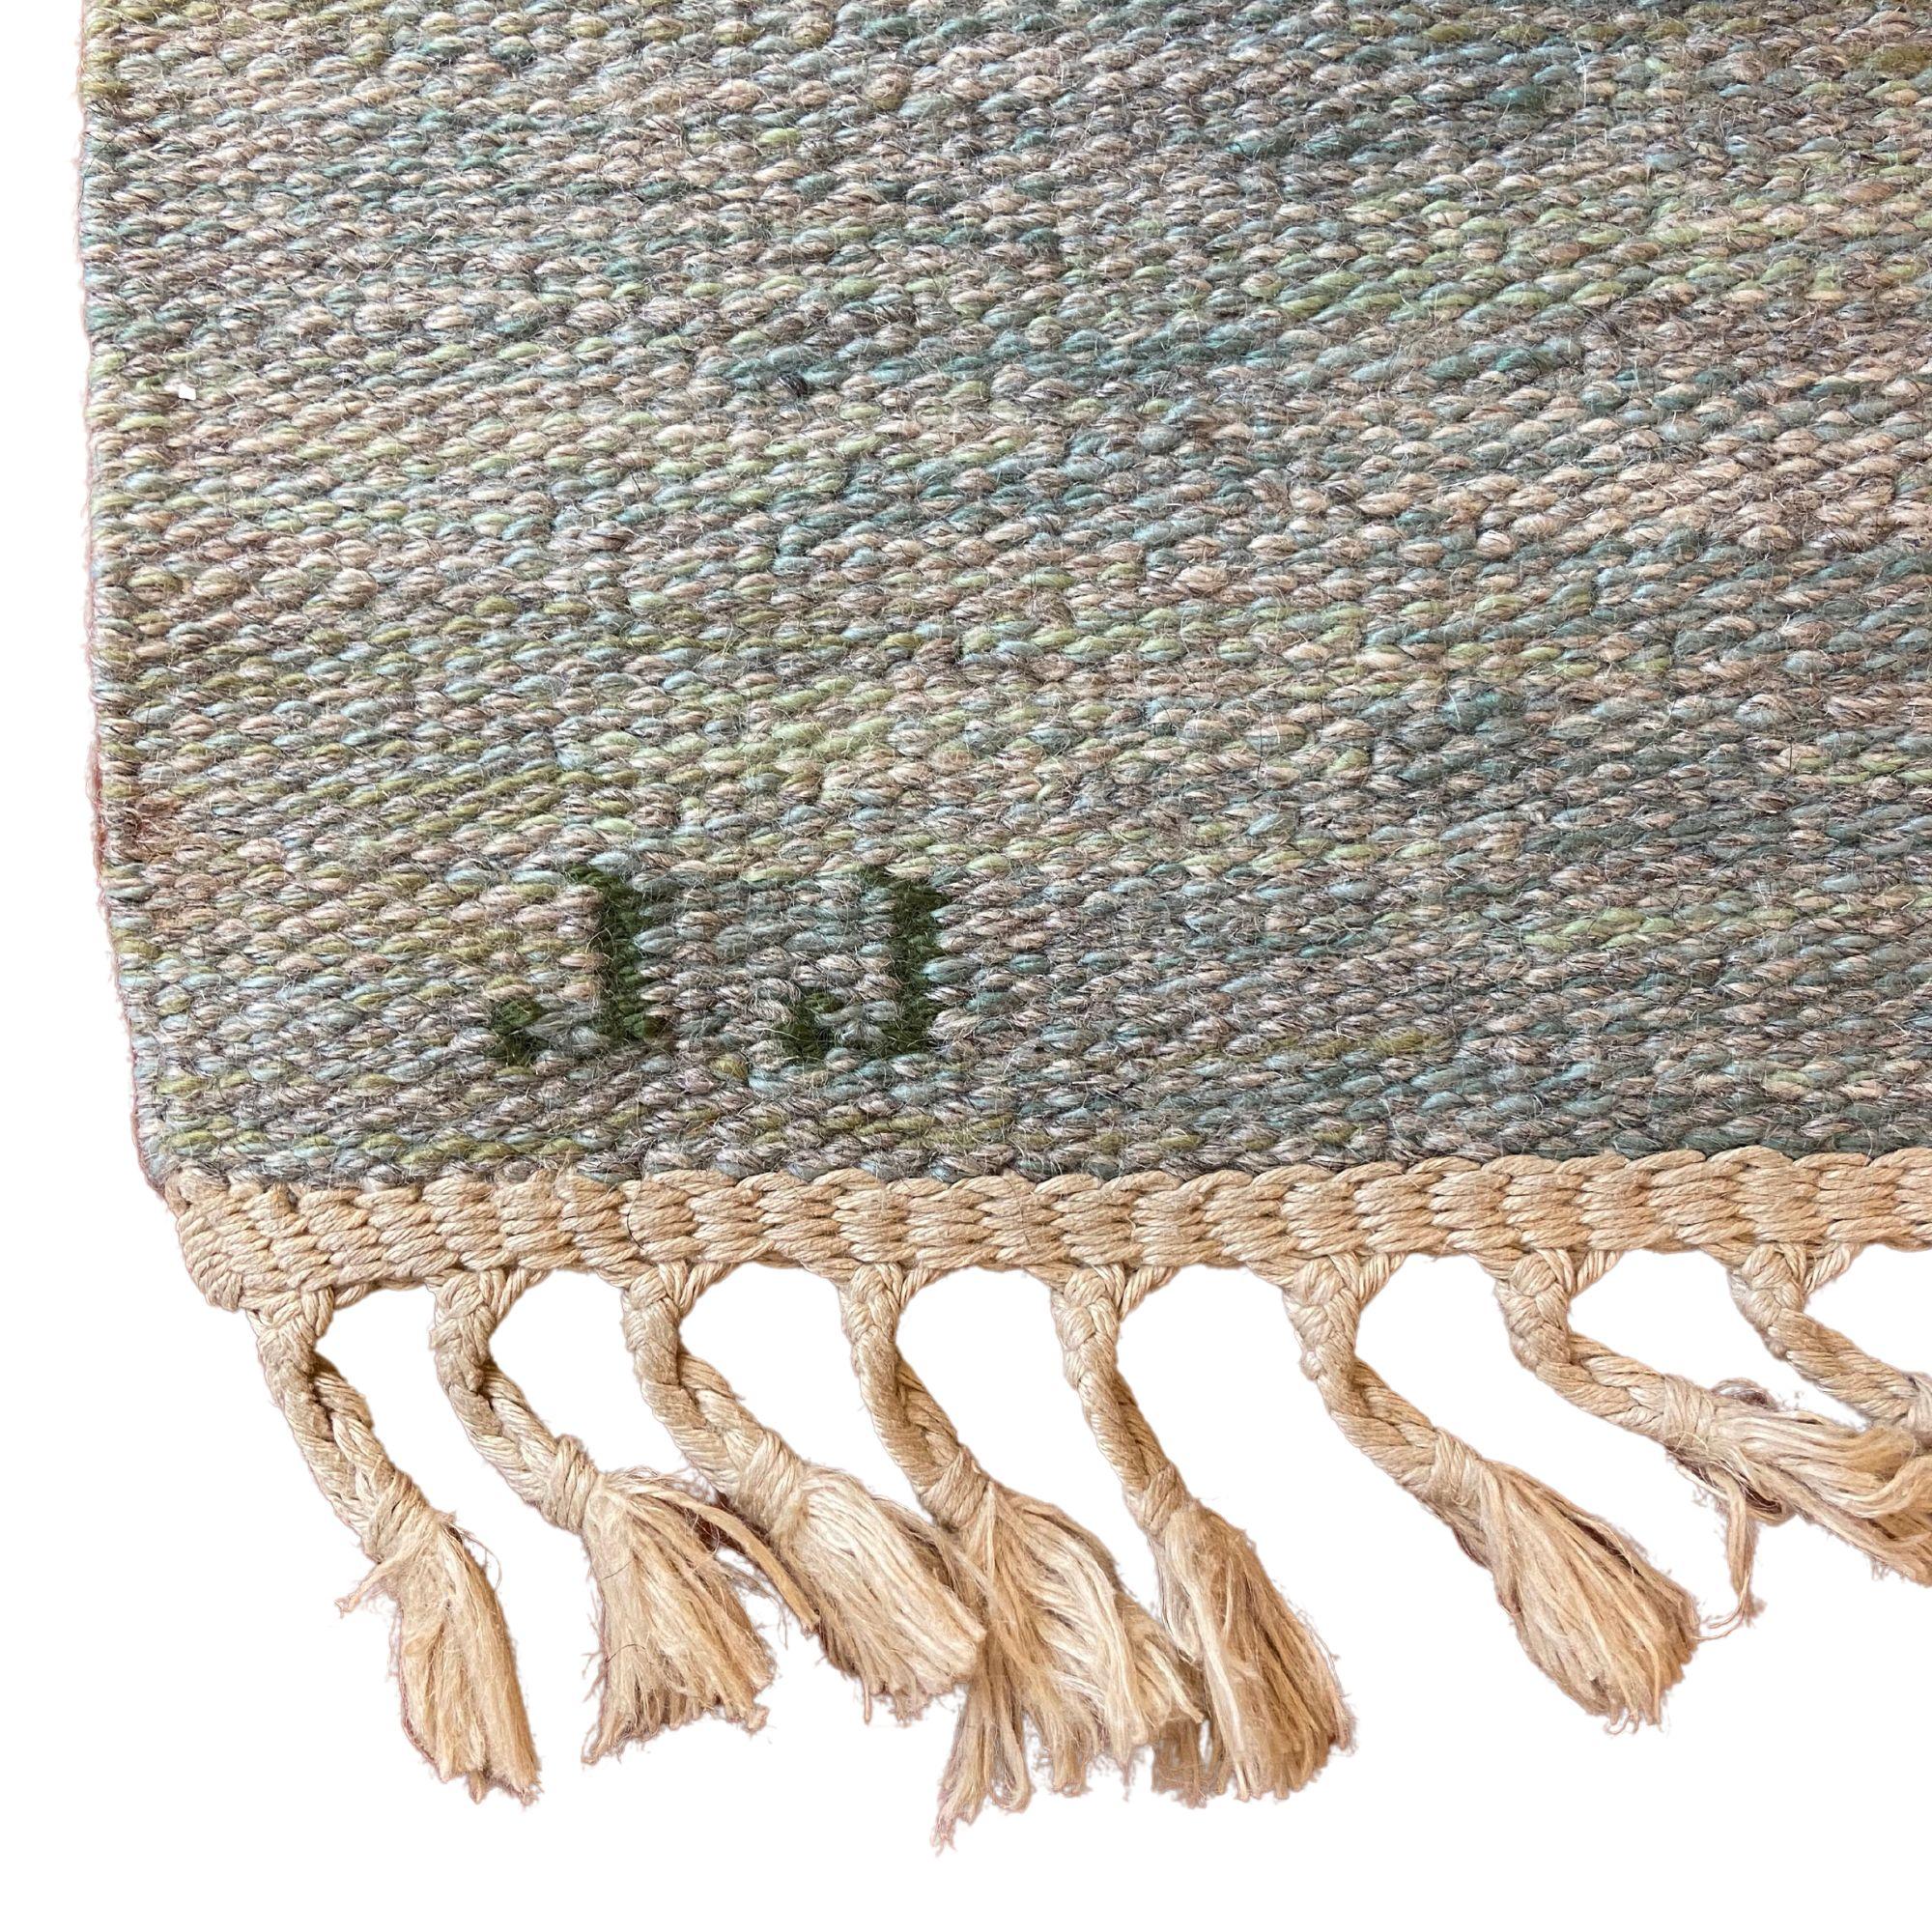 Dieser einzigartige skandinavische Teppich wurde von der bekannten Weberin und Textilkünstlerin Judith Johansson um 1955 in Schweden handgeknüpft. Mit eingewebtem Schriftzug 